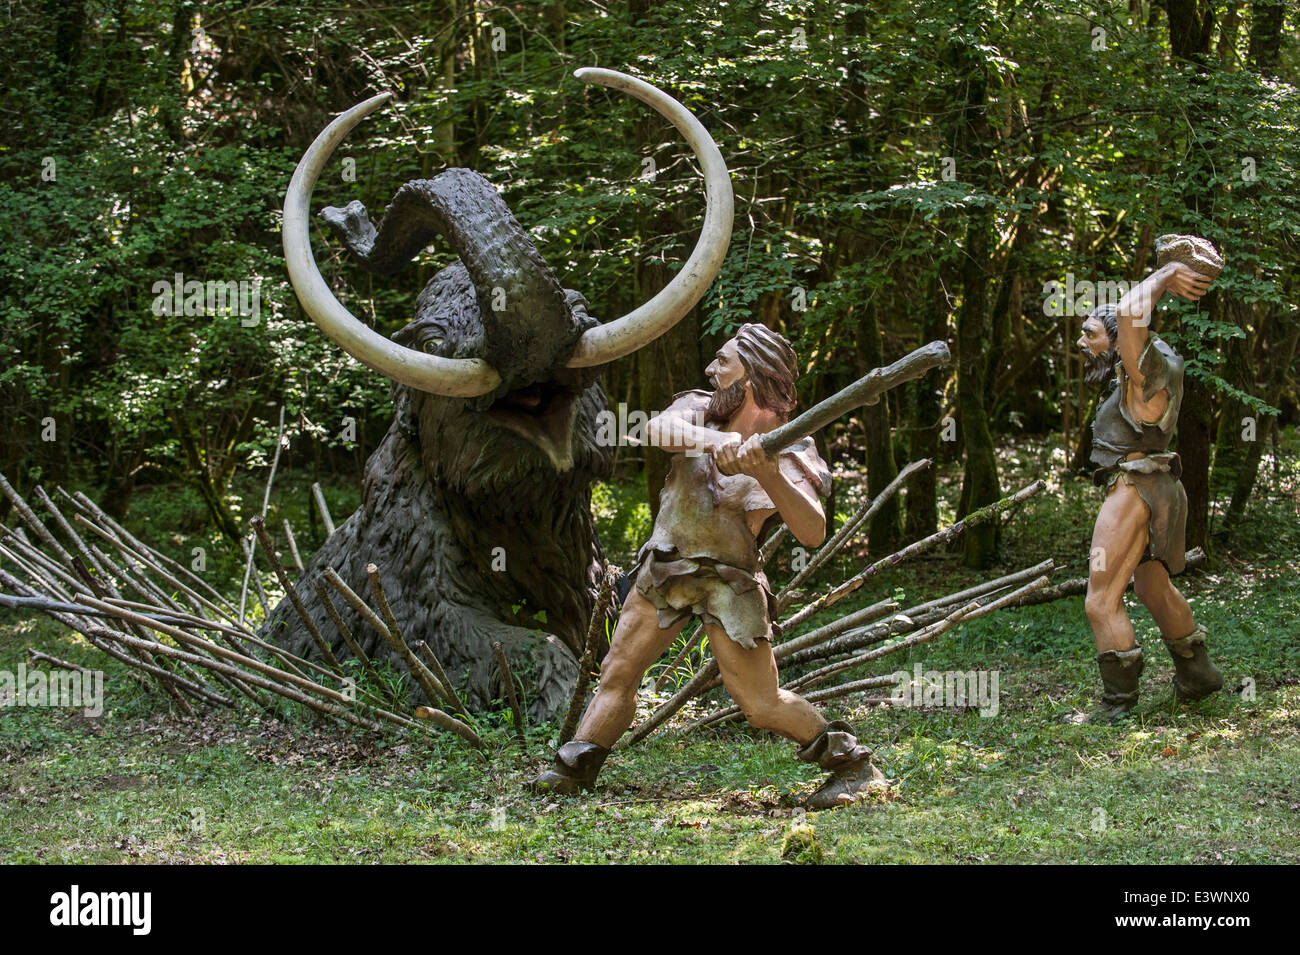 Les chasseurs néandertaliens tuant piégés au mammouth préhistorique Préhisto Parc, Tursac, Dordogne, Aquitaine, France Banque D'Images